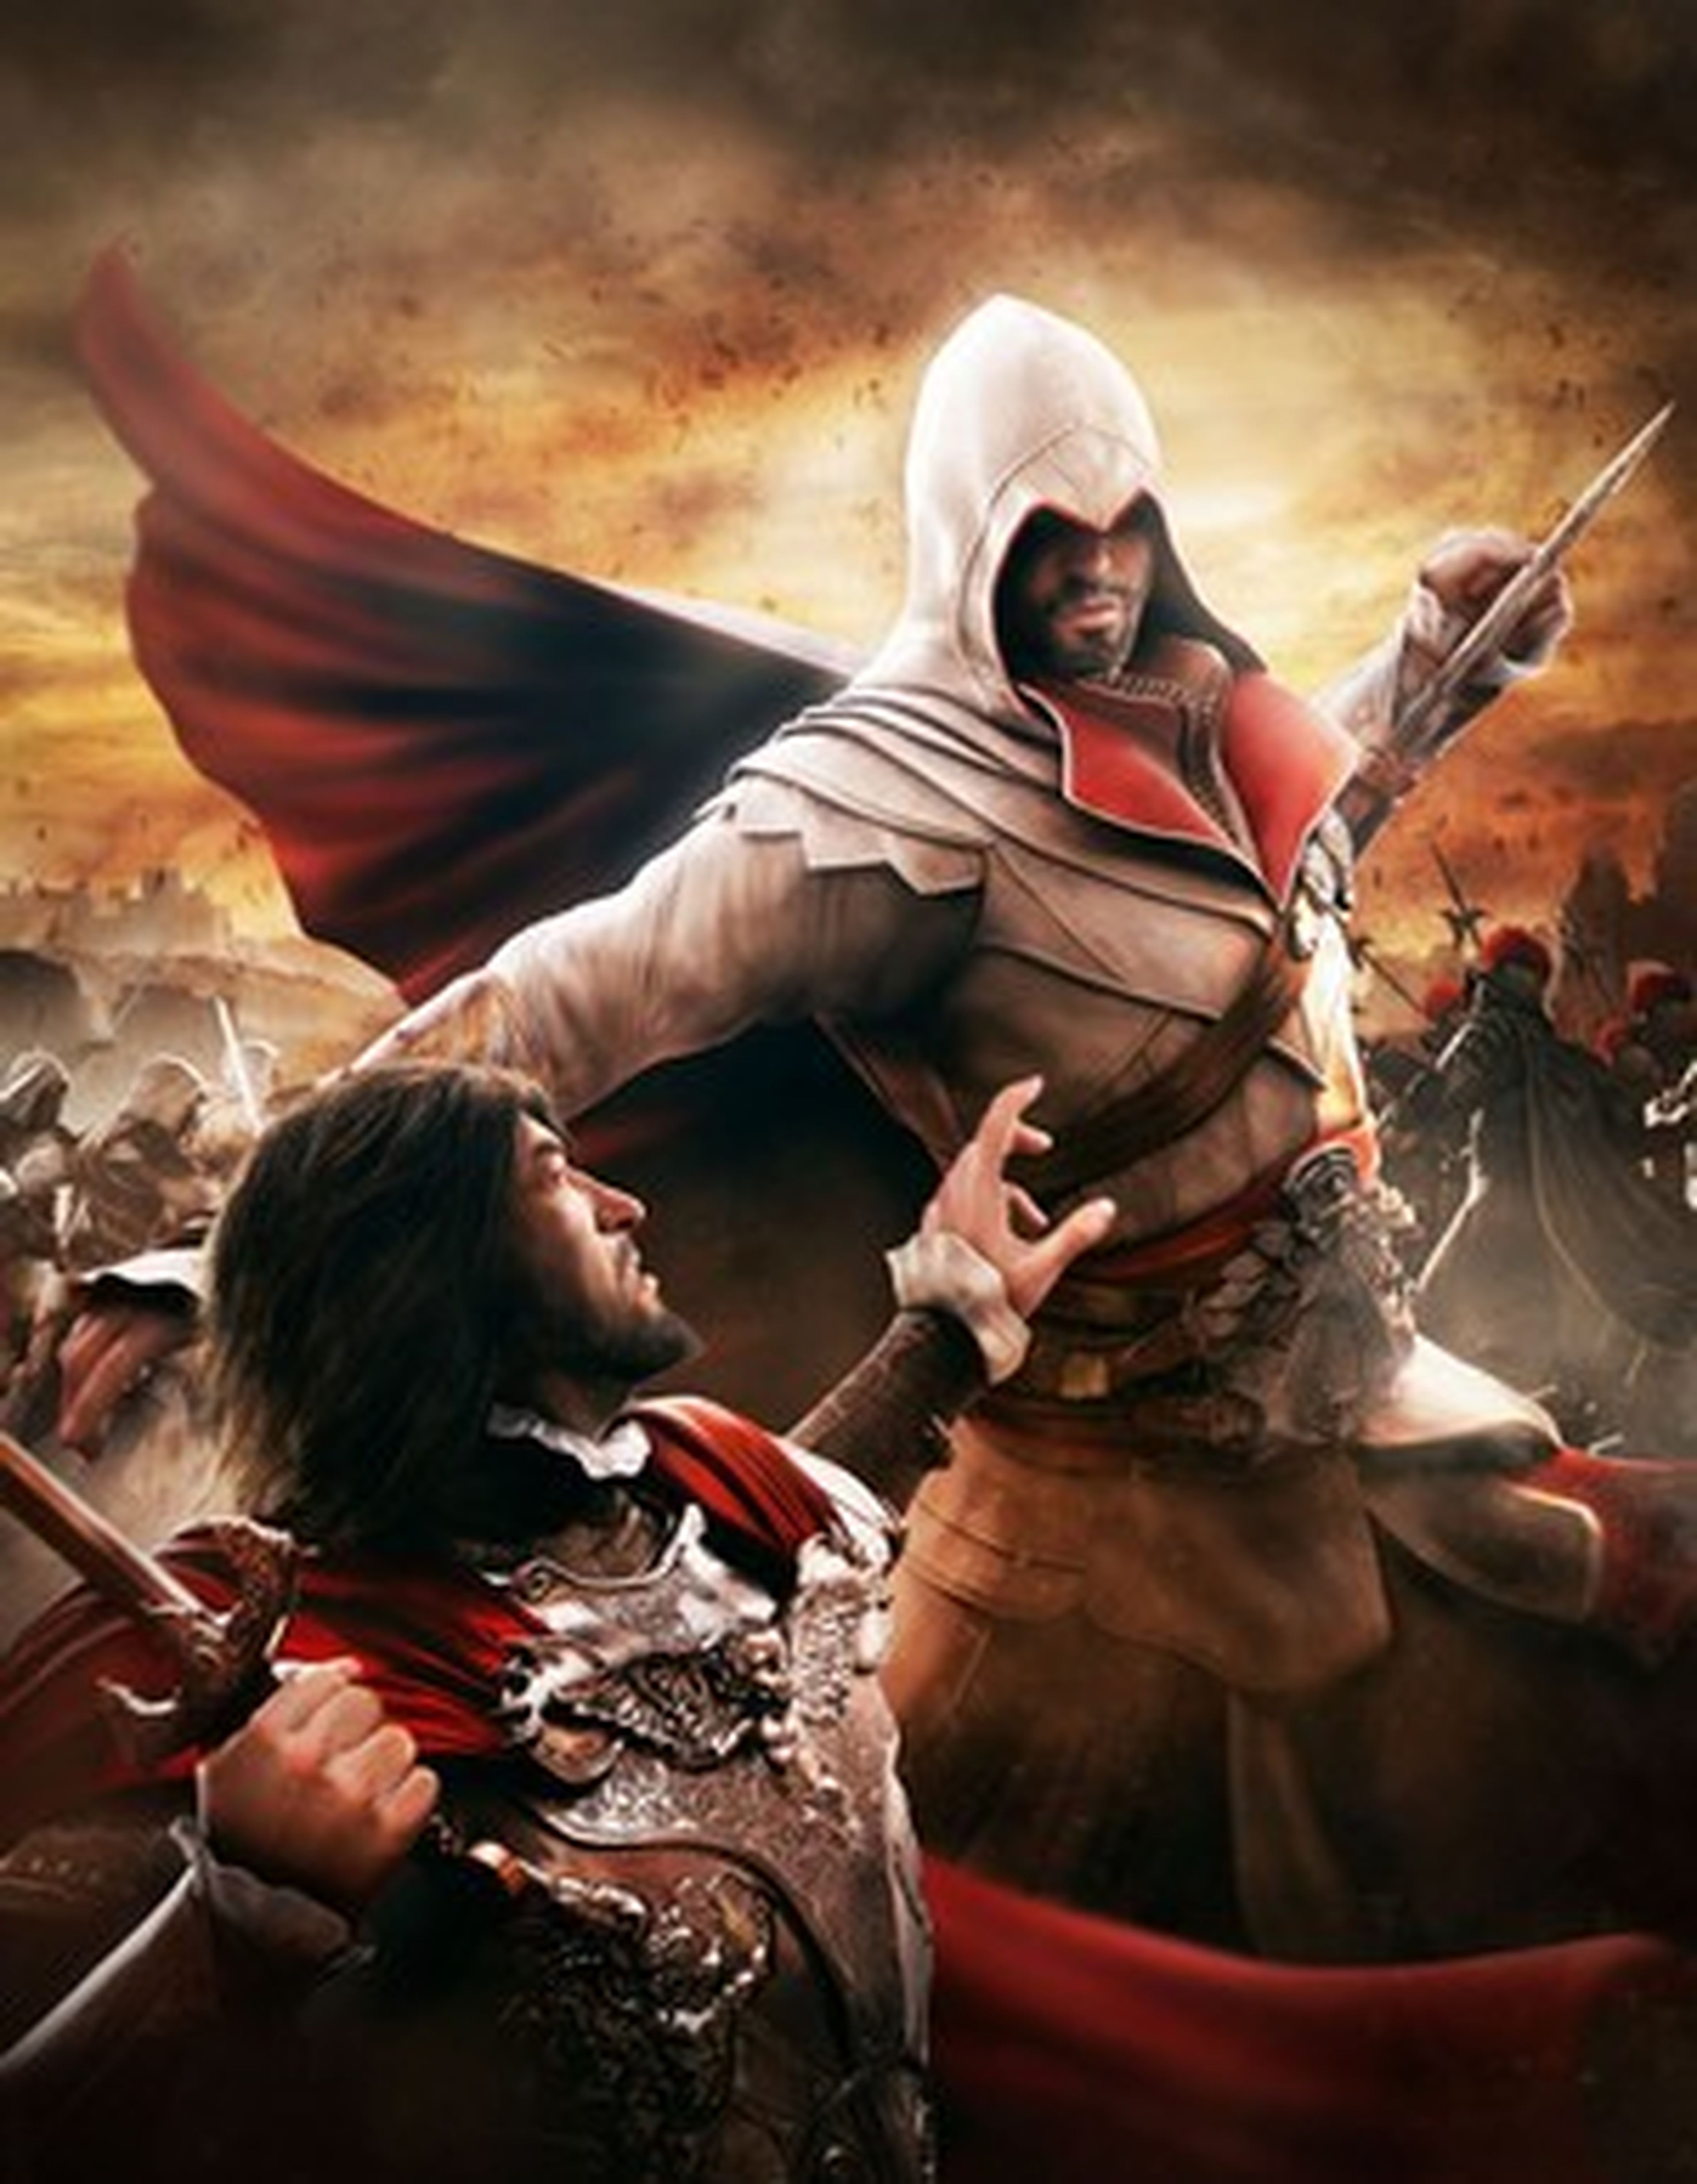 Assassin's Creed y su relación con España